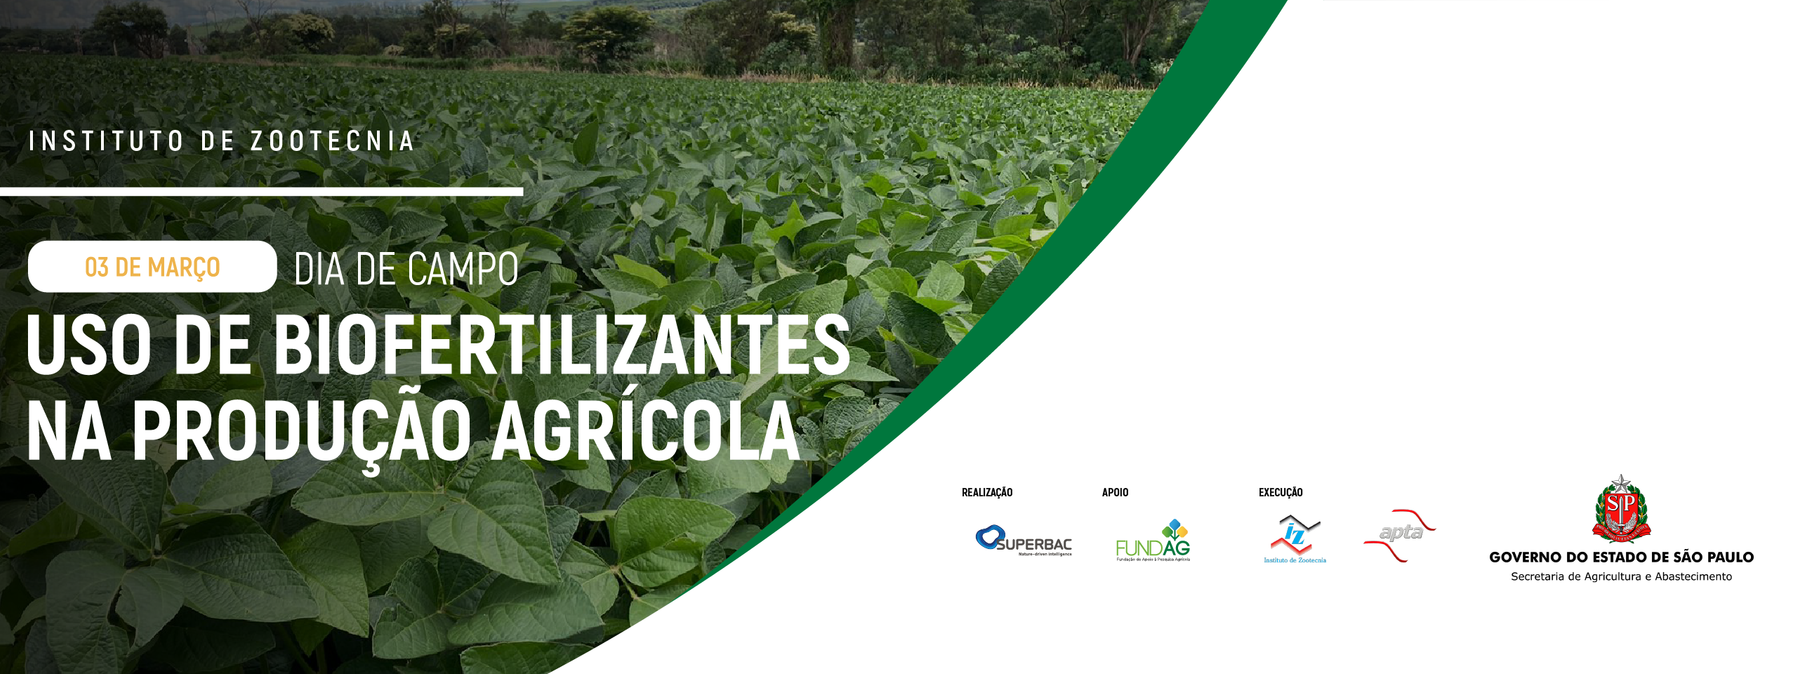 Dia de campo: Uso de biofertilizantes na produção agrícola